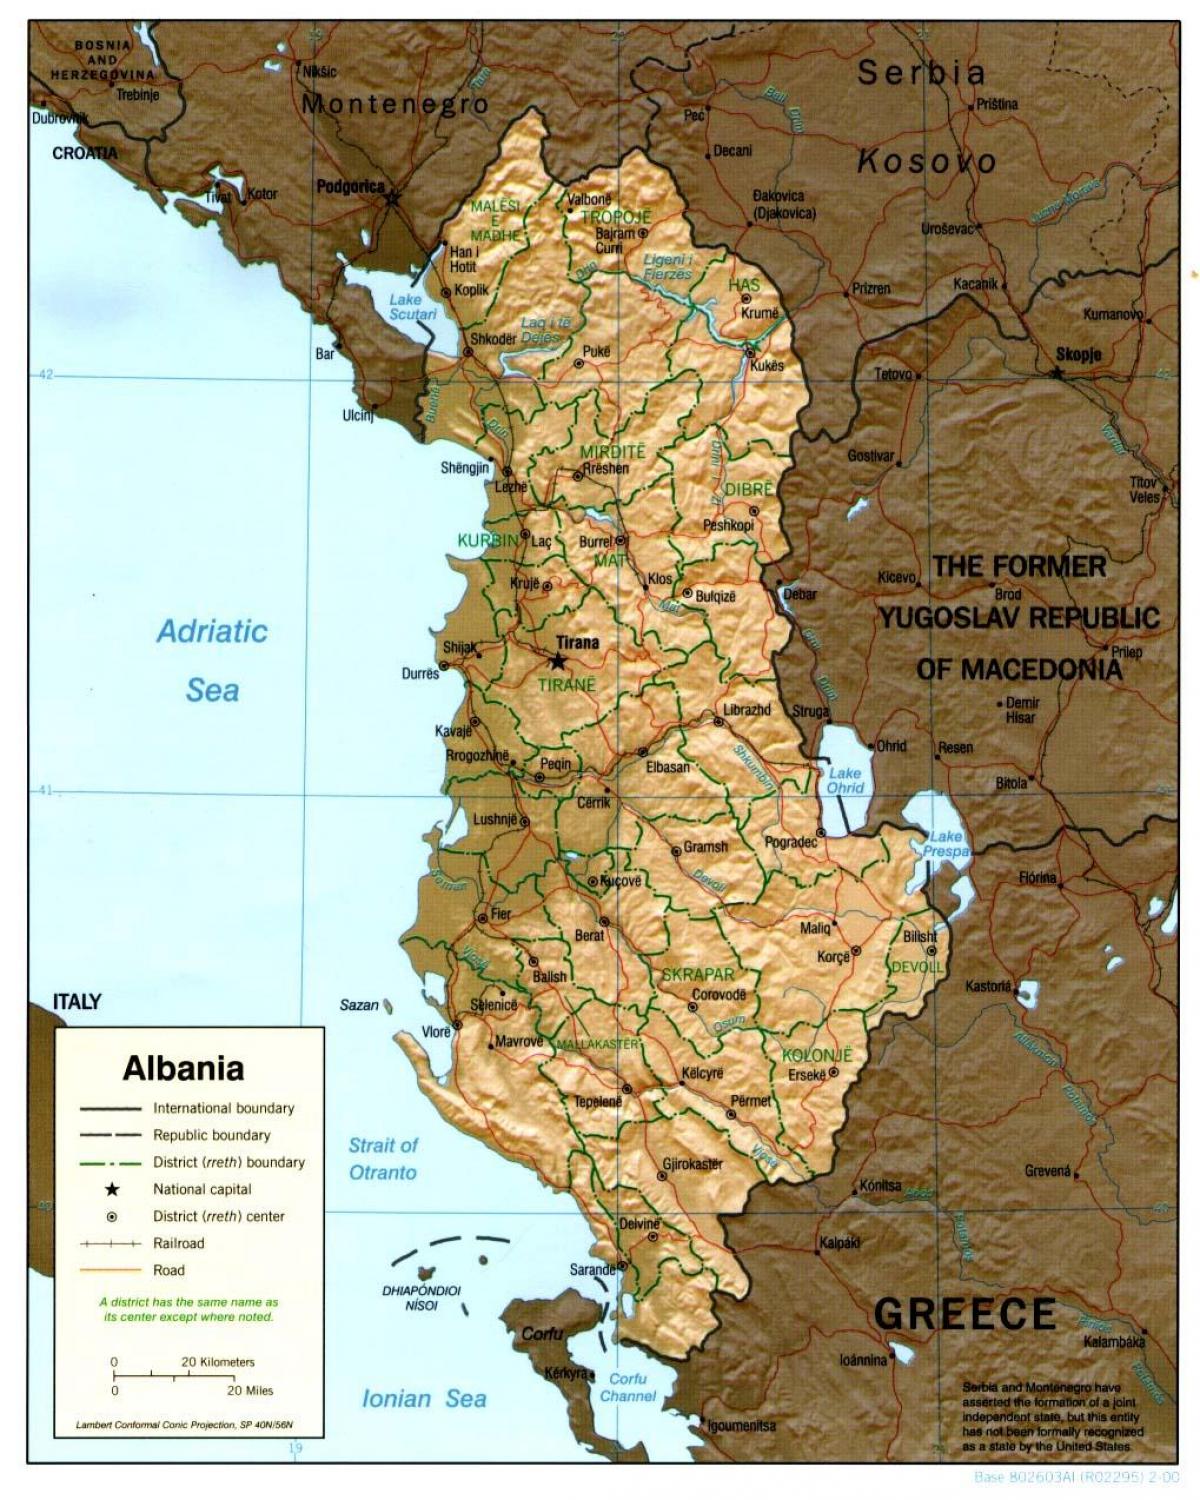 अल्बानियाई पुराने नक्शे